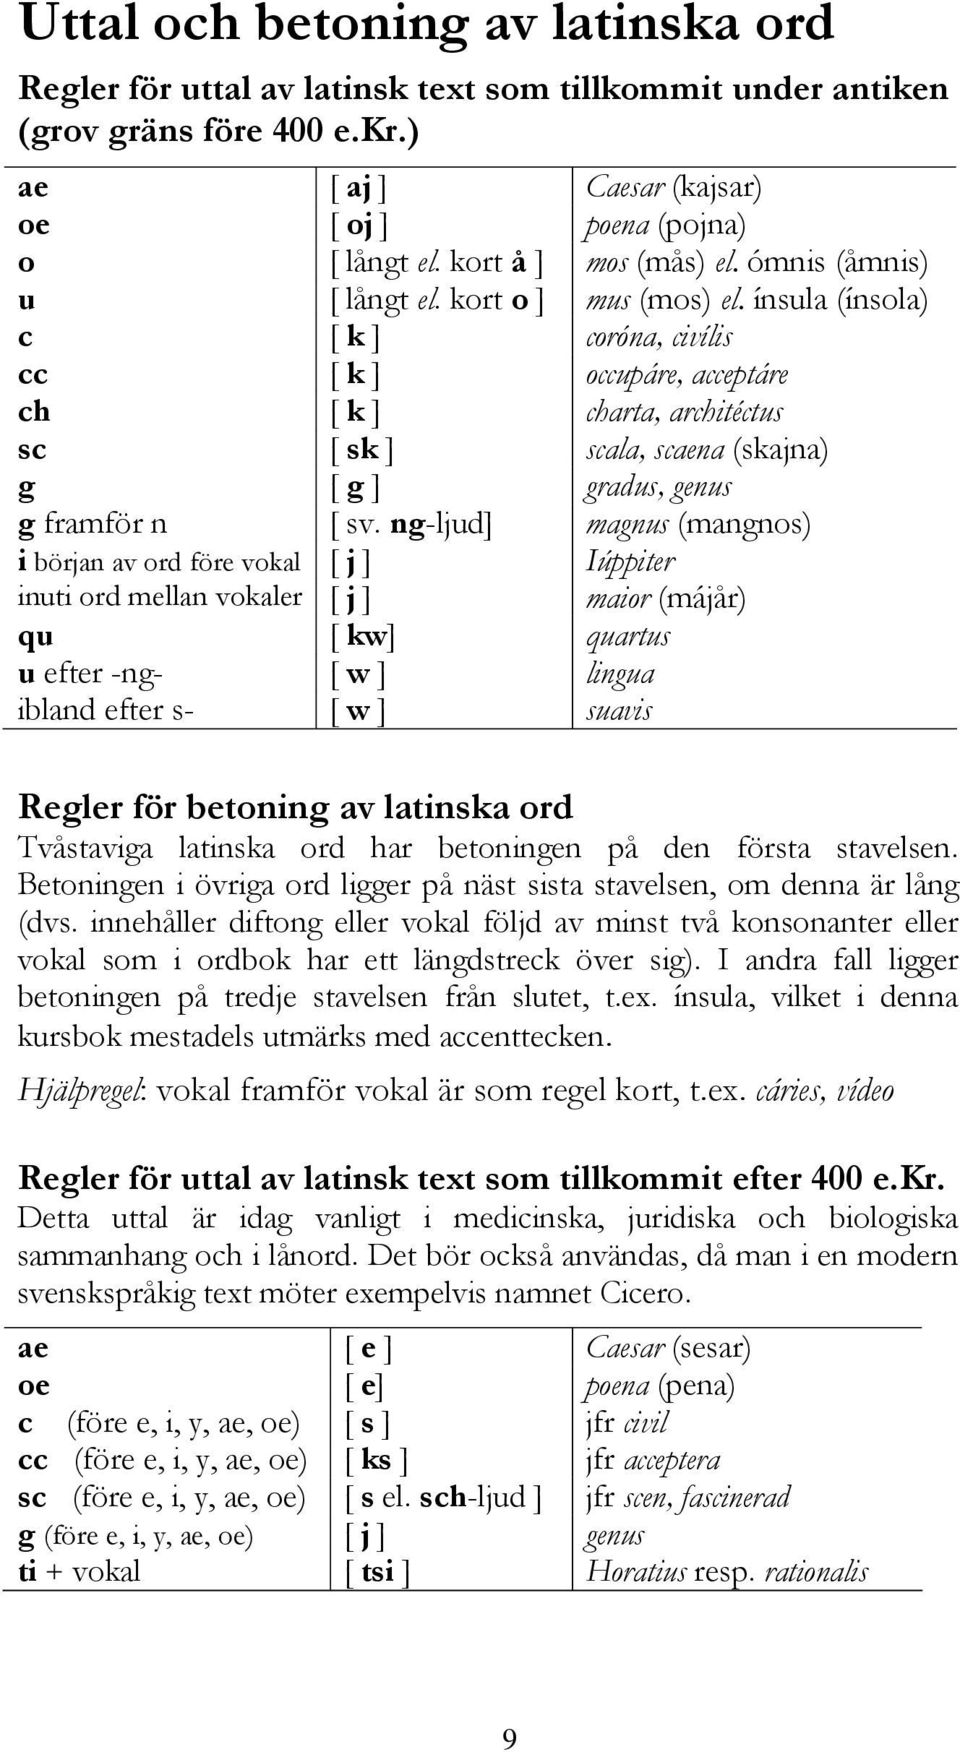 text text som som tillkommit tillkommit under under antiken antiken (grov (grov gräns gräns före före 400 400 e.kr.